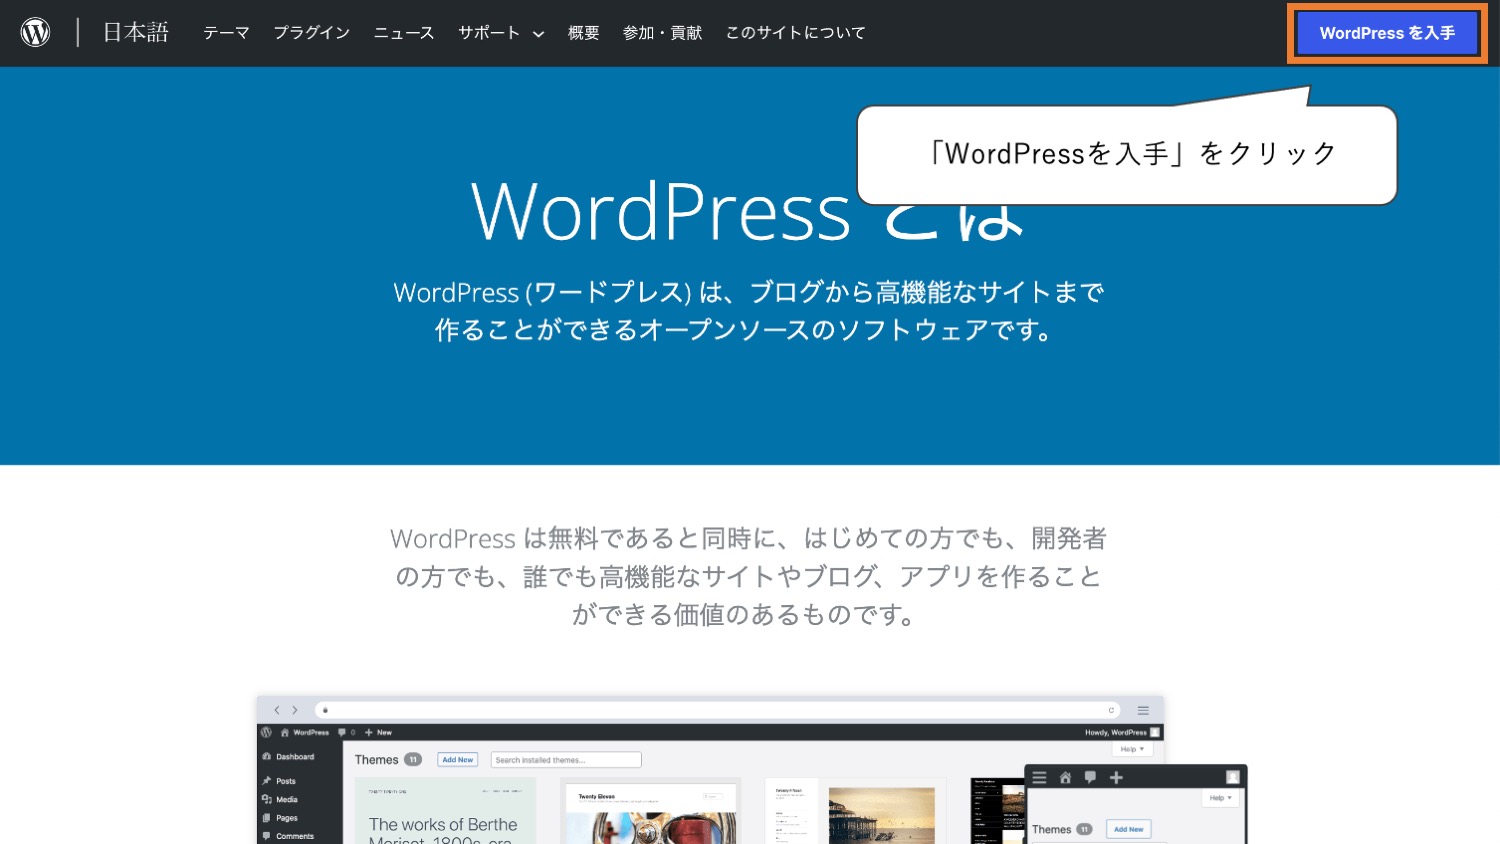 「WordPressを入手」をクリック